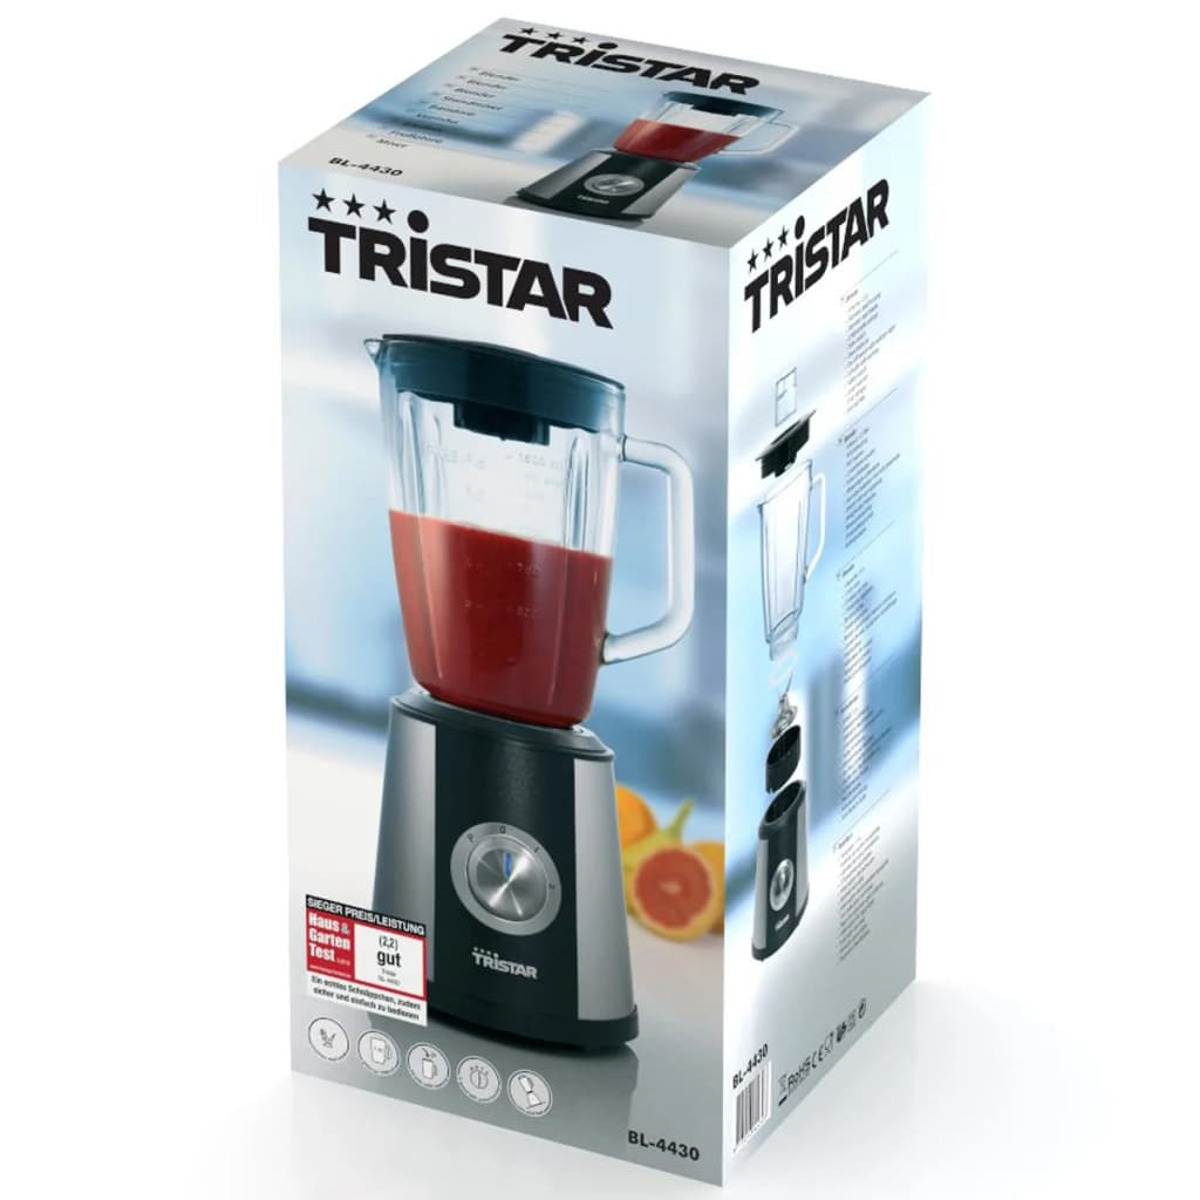 TRISTAR 402268 Standmixer 1.5 (500 Silber Watt, Liter)